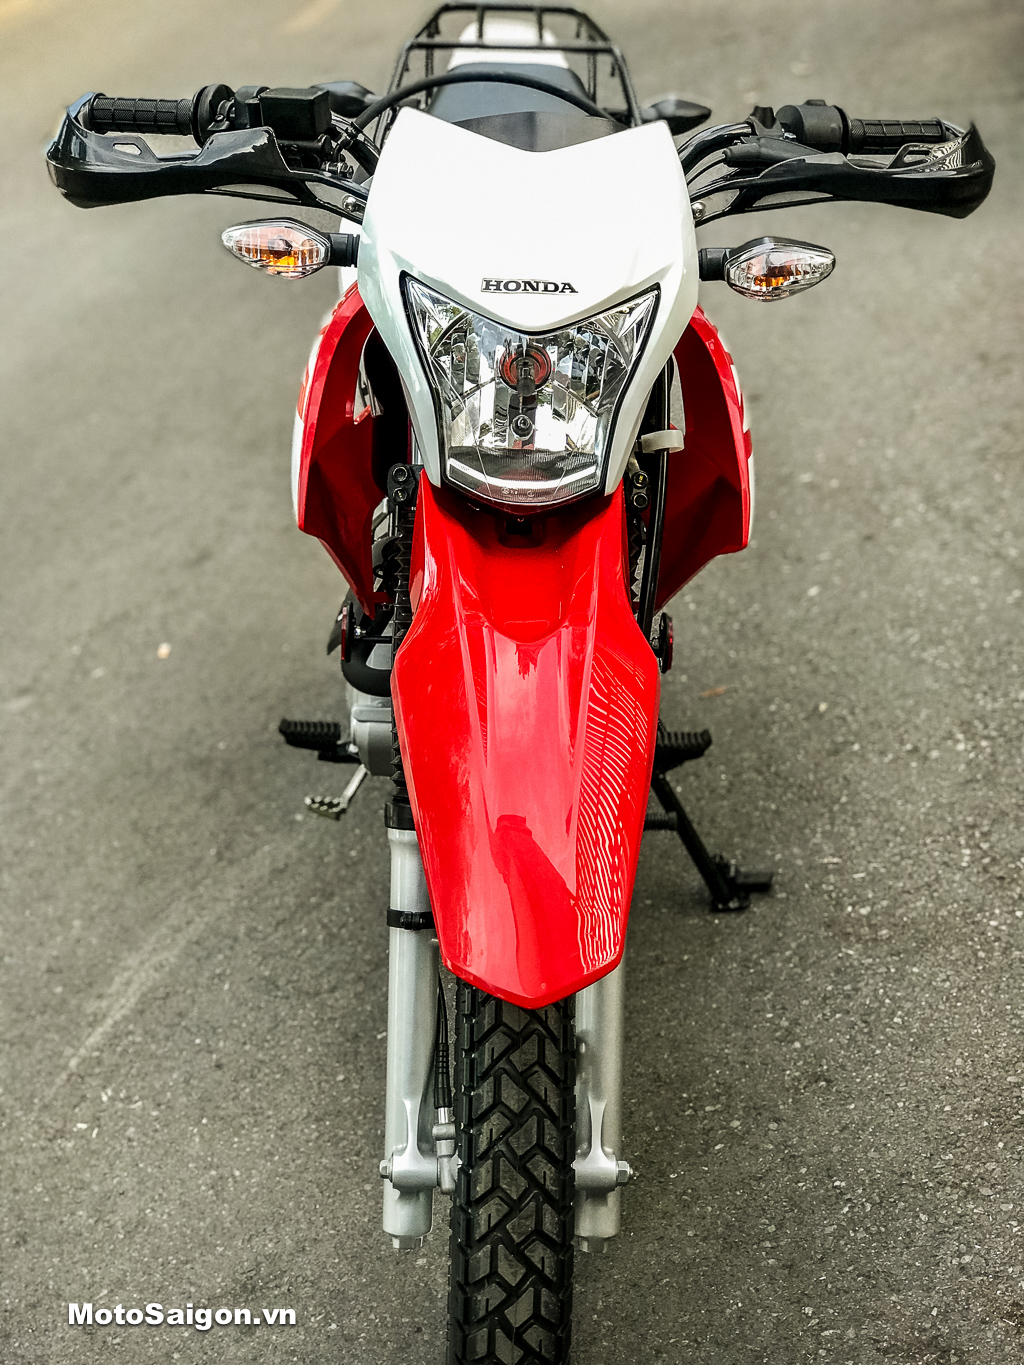 Khác  HONDA XR 150L 2017 CÀO CÀO GIÁ RẺ CHO BIKER PHƯỢT   Chợ Moto  Mua  bán rao vặt xe moto pkl xe côn tay moto phân khối lớn